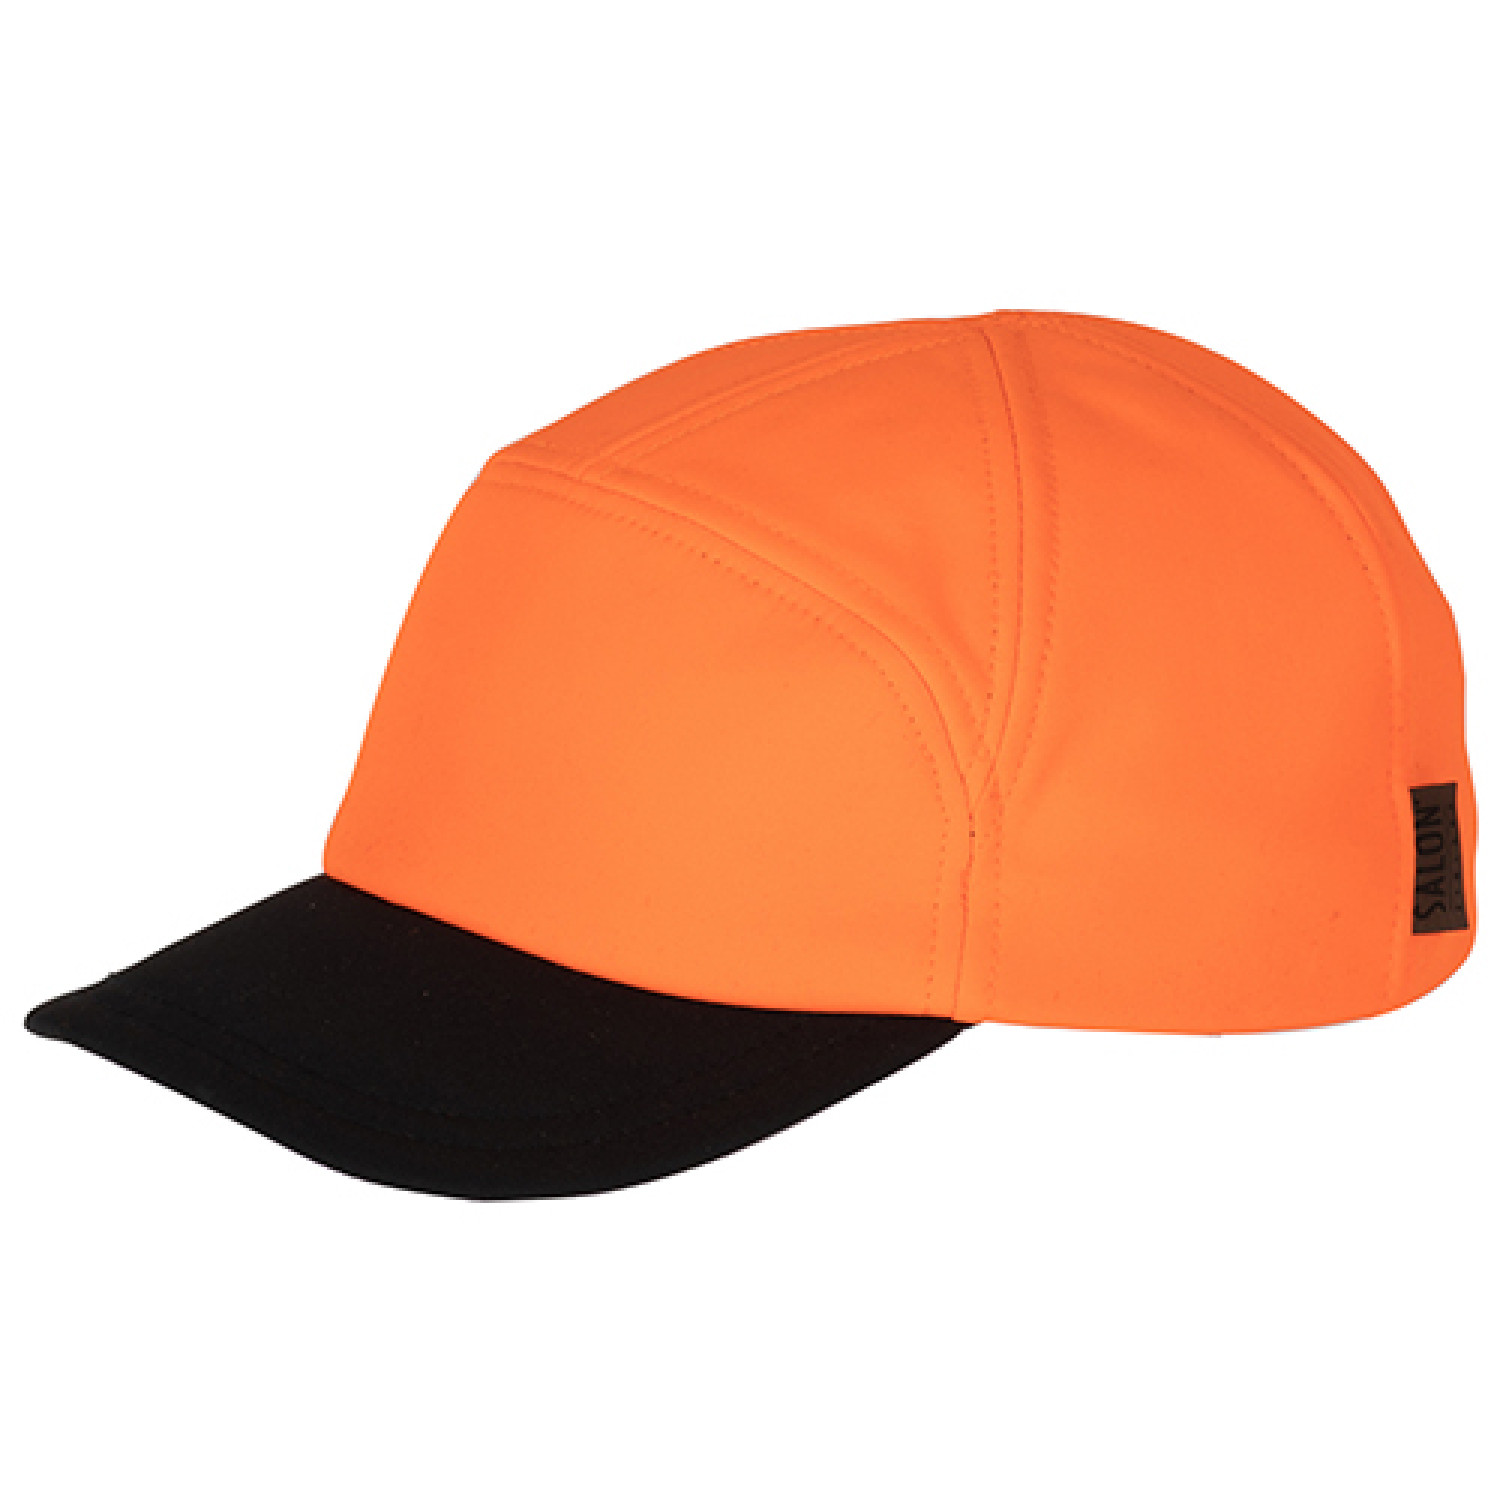 Cap City Gen Wind Foxshell orange high vision colour